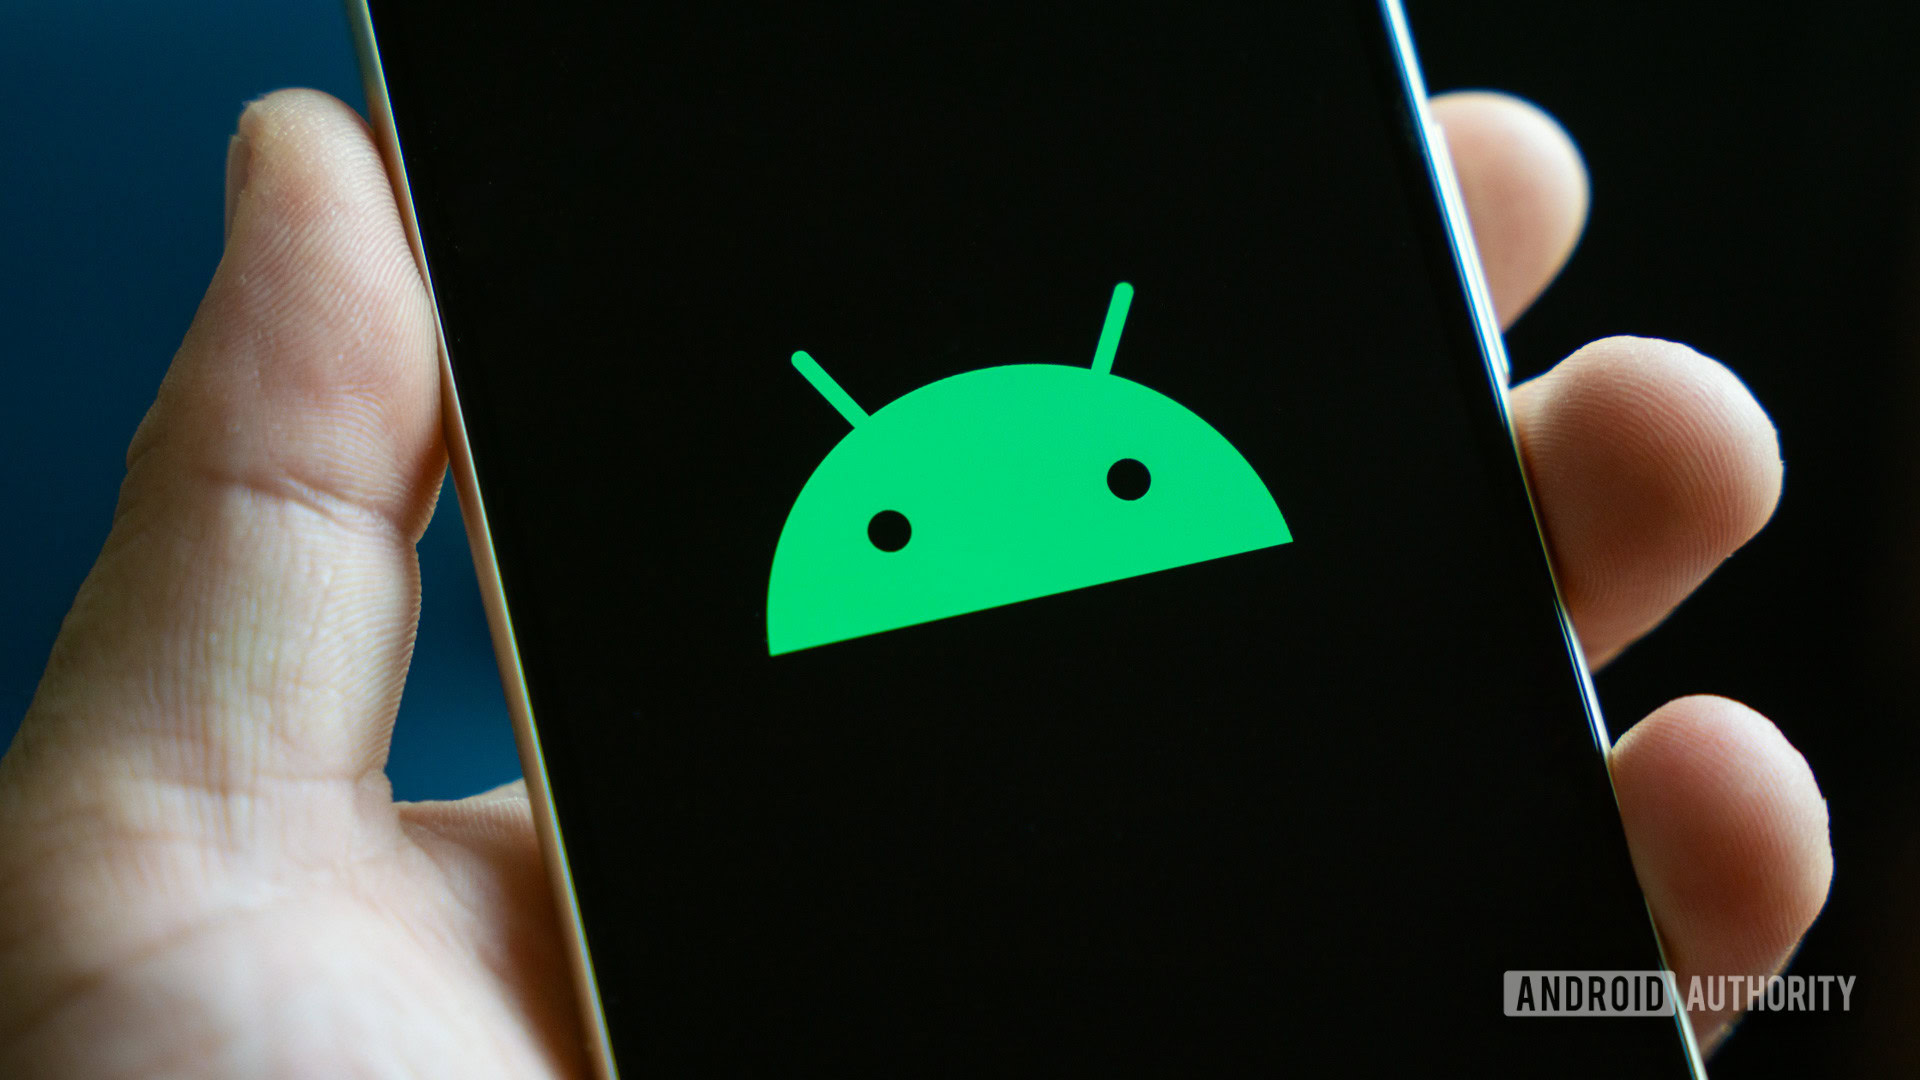 微软披露了一个可能对数十亿 Android 设备构成威胁的安全漏洞